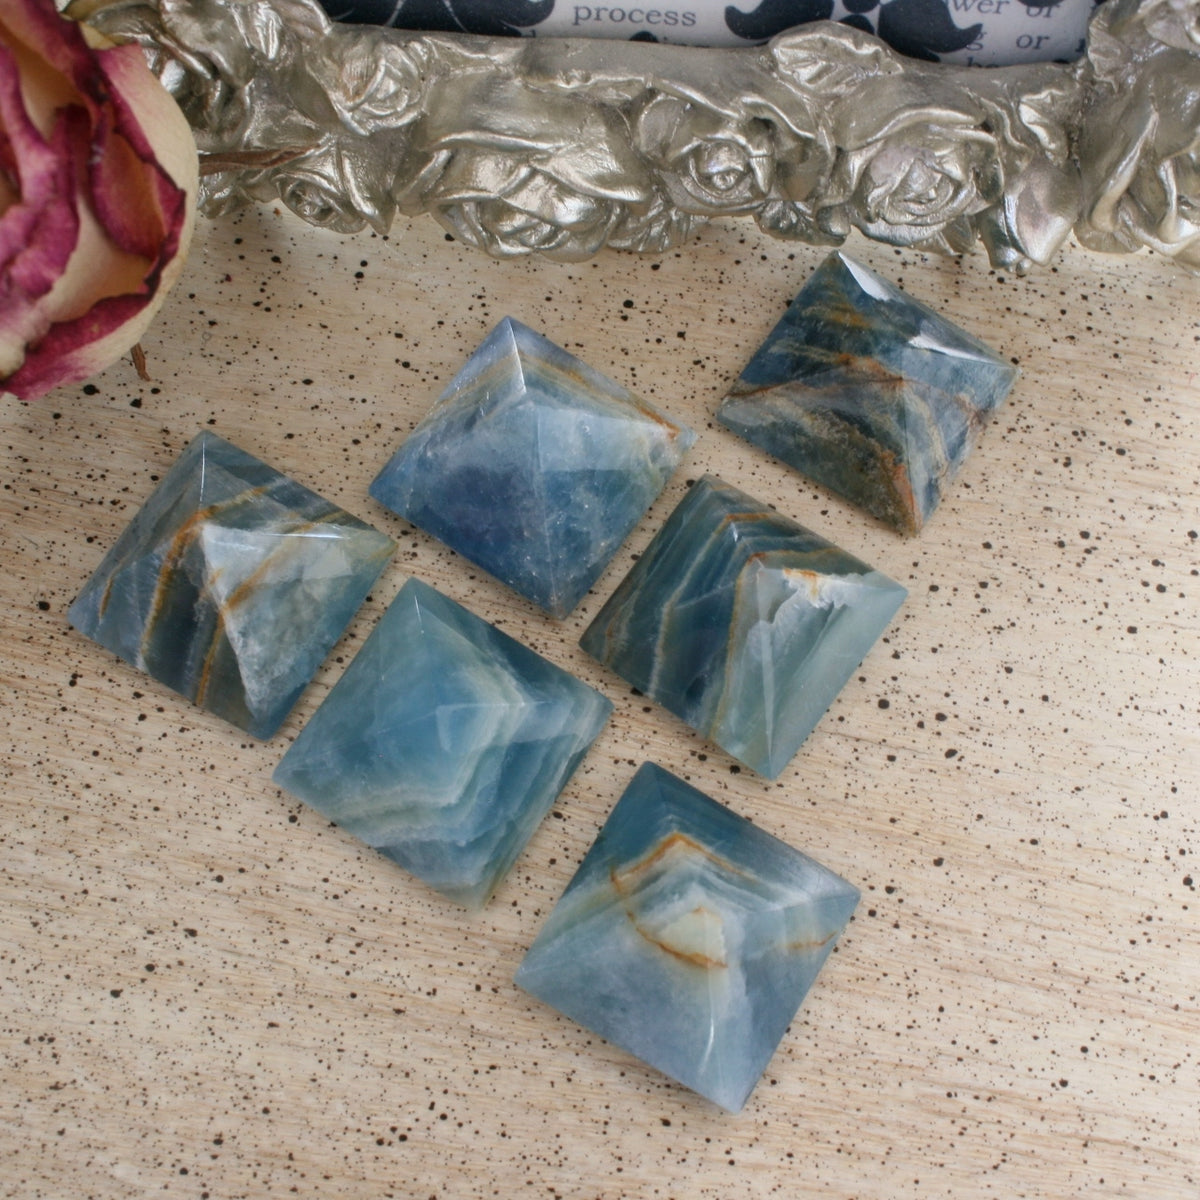 Blue Calcite /Blue Onyx Pyramid from Argentina, also called Lemurian Aquatine Calcite, LGPY2